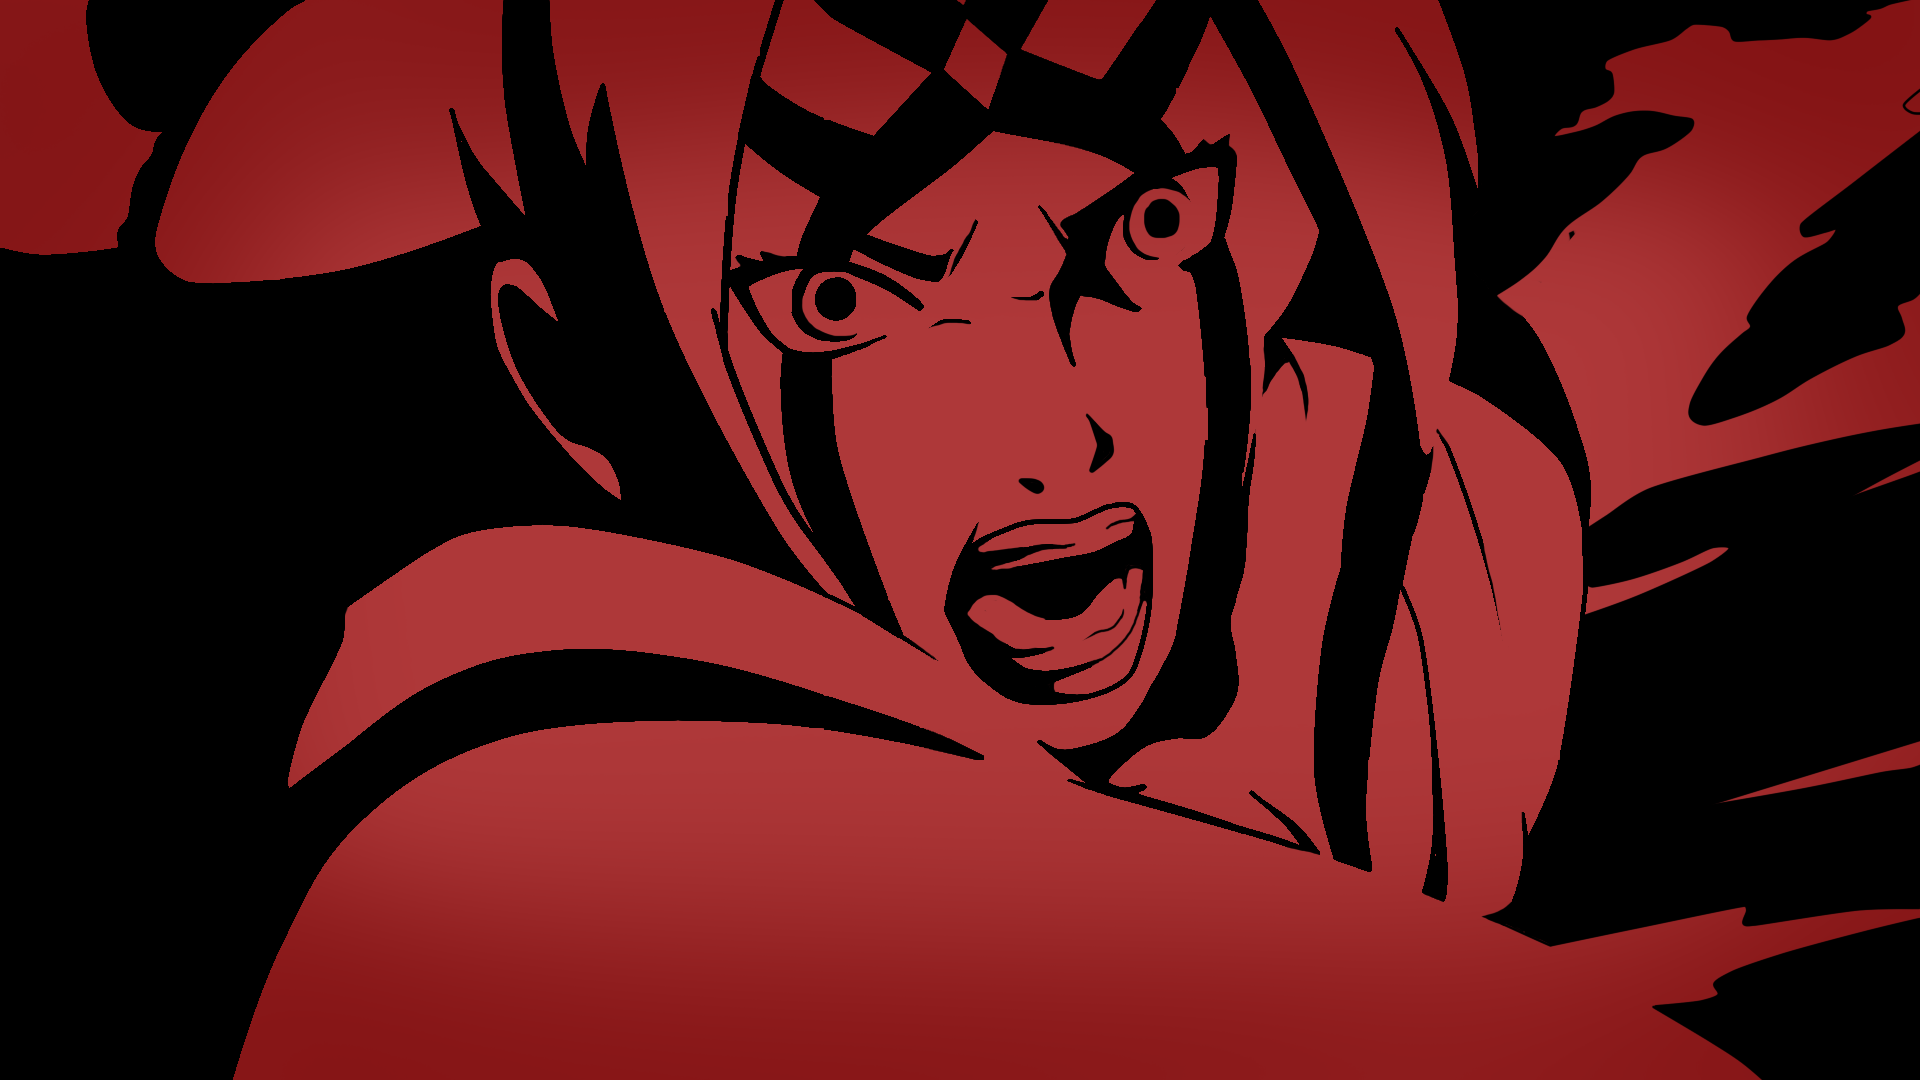 Anime 1920x1080 Naruto Shippuden Tsunade anime red black face open mouth